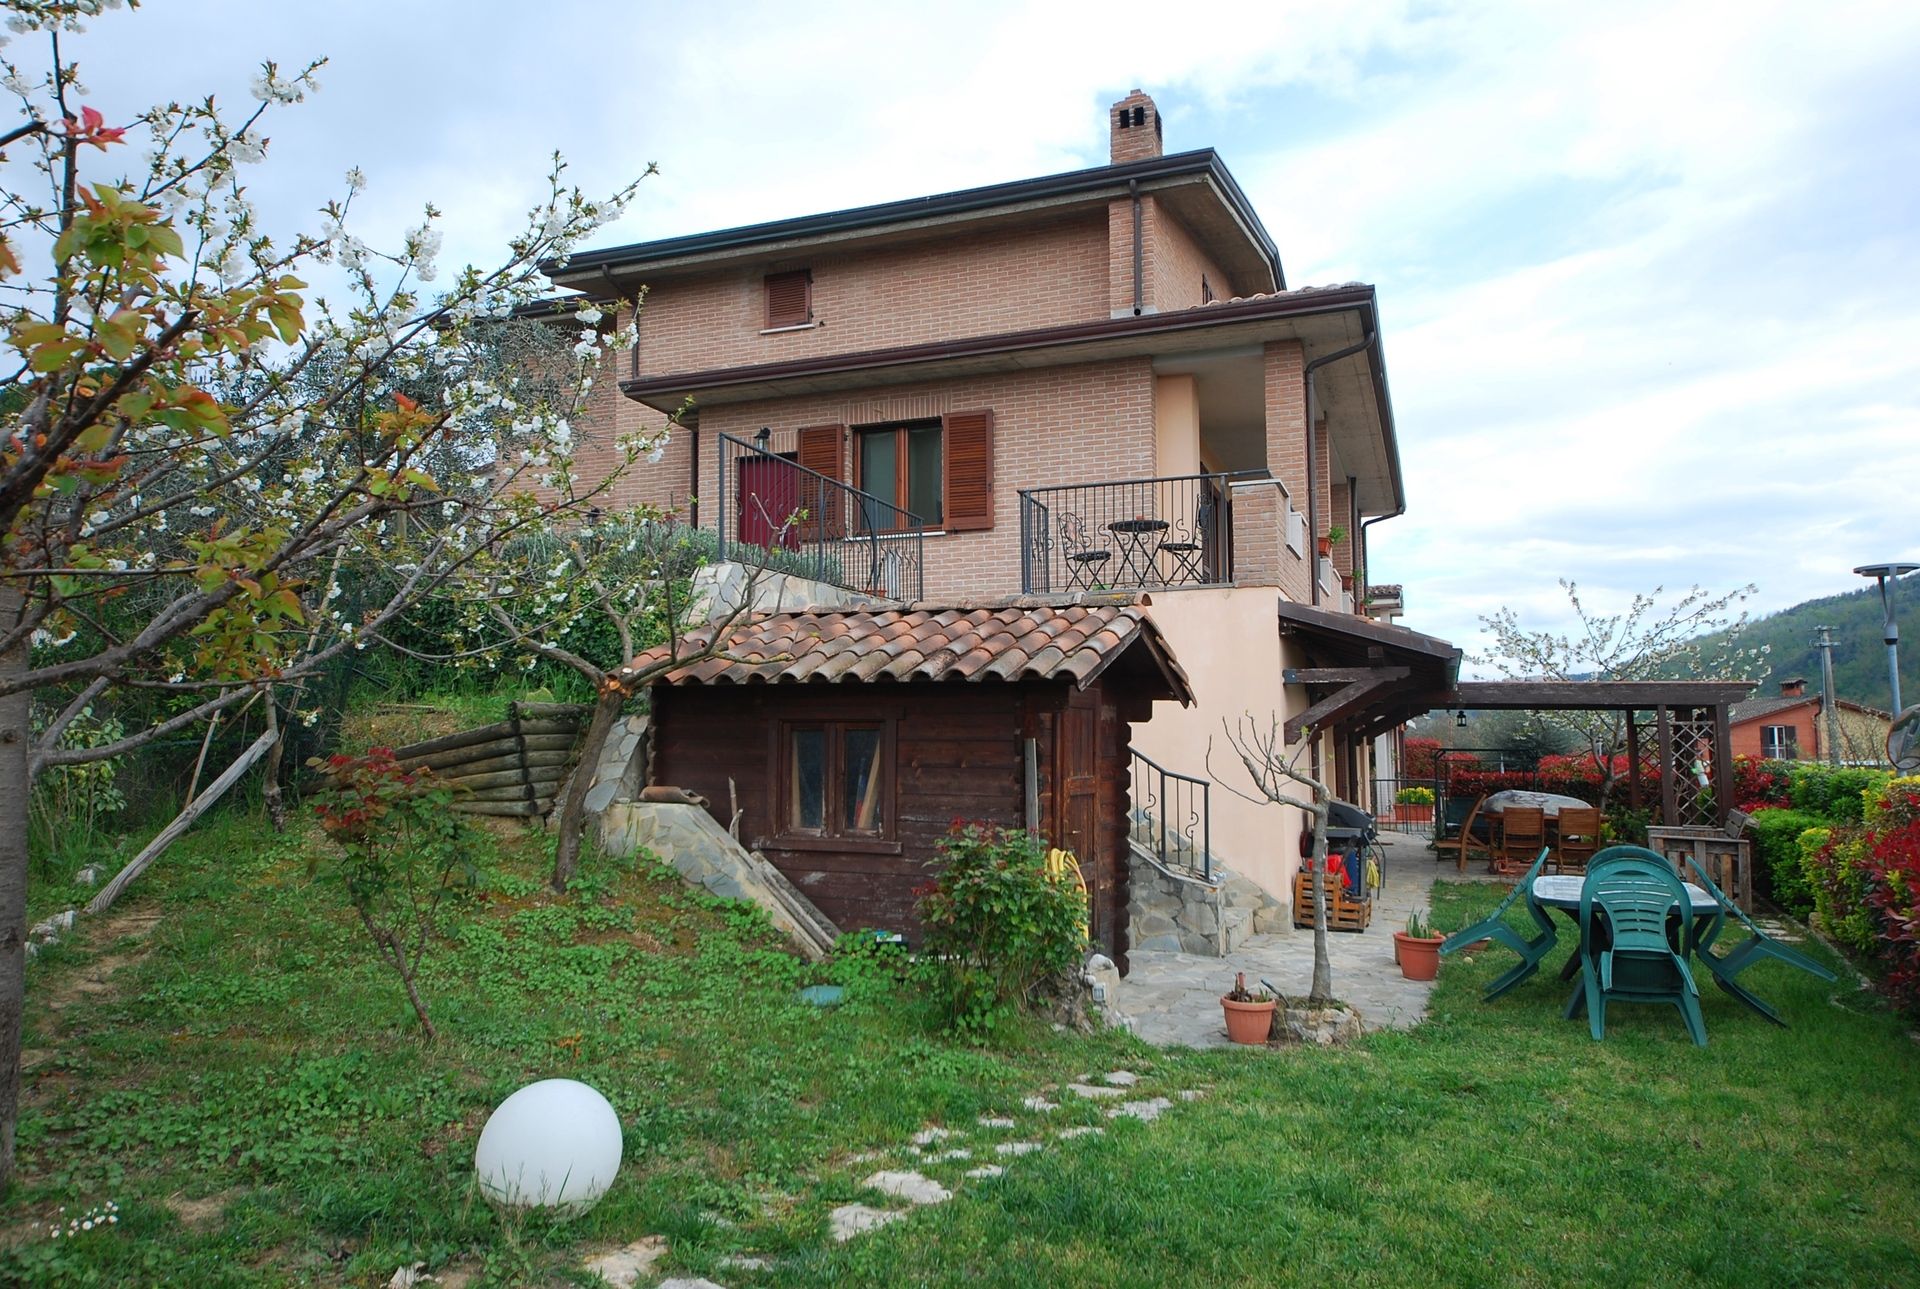 A vendre villa in zone tranquille Perugia Umbria